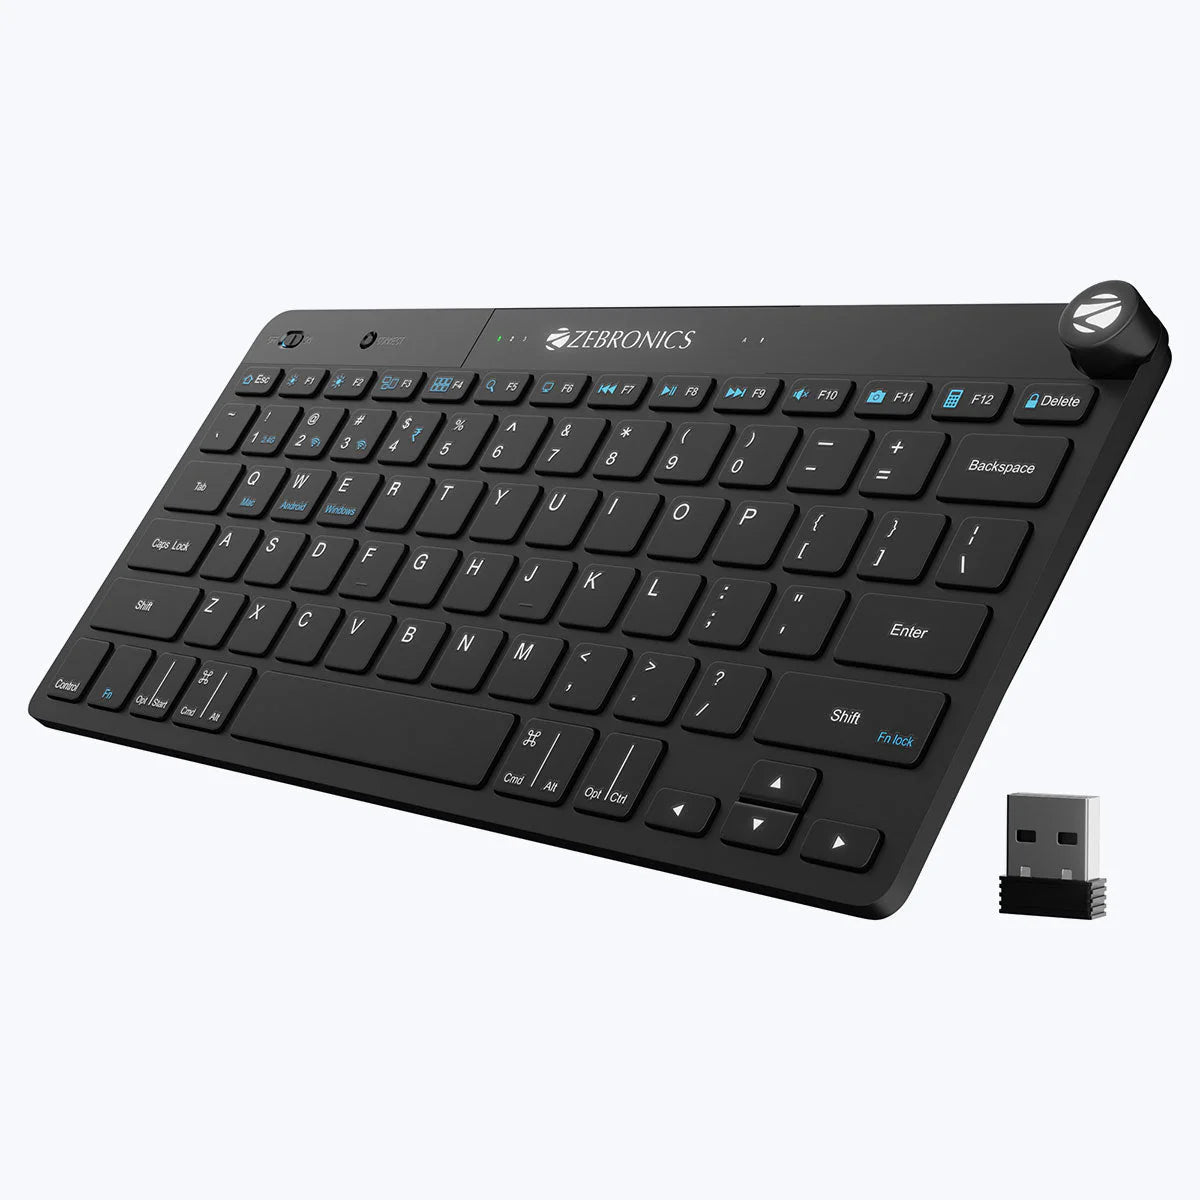 Zebronics Keypad X1 - Wireless Keyboard